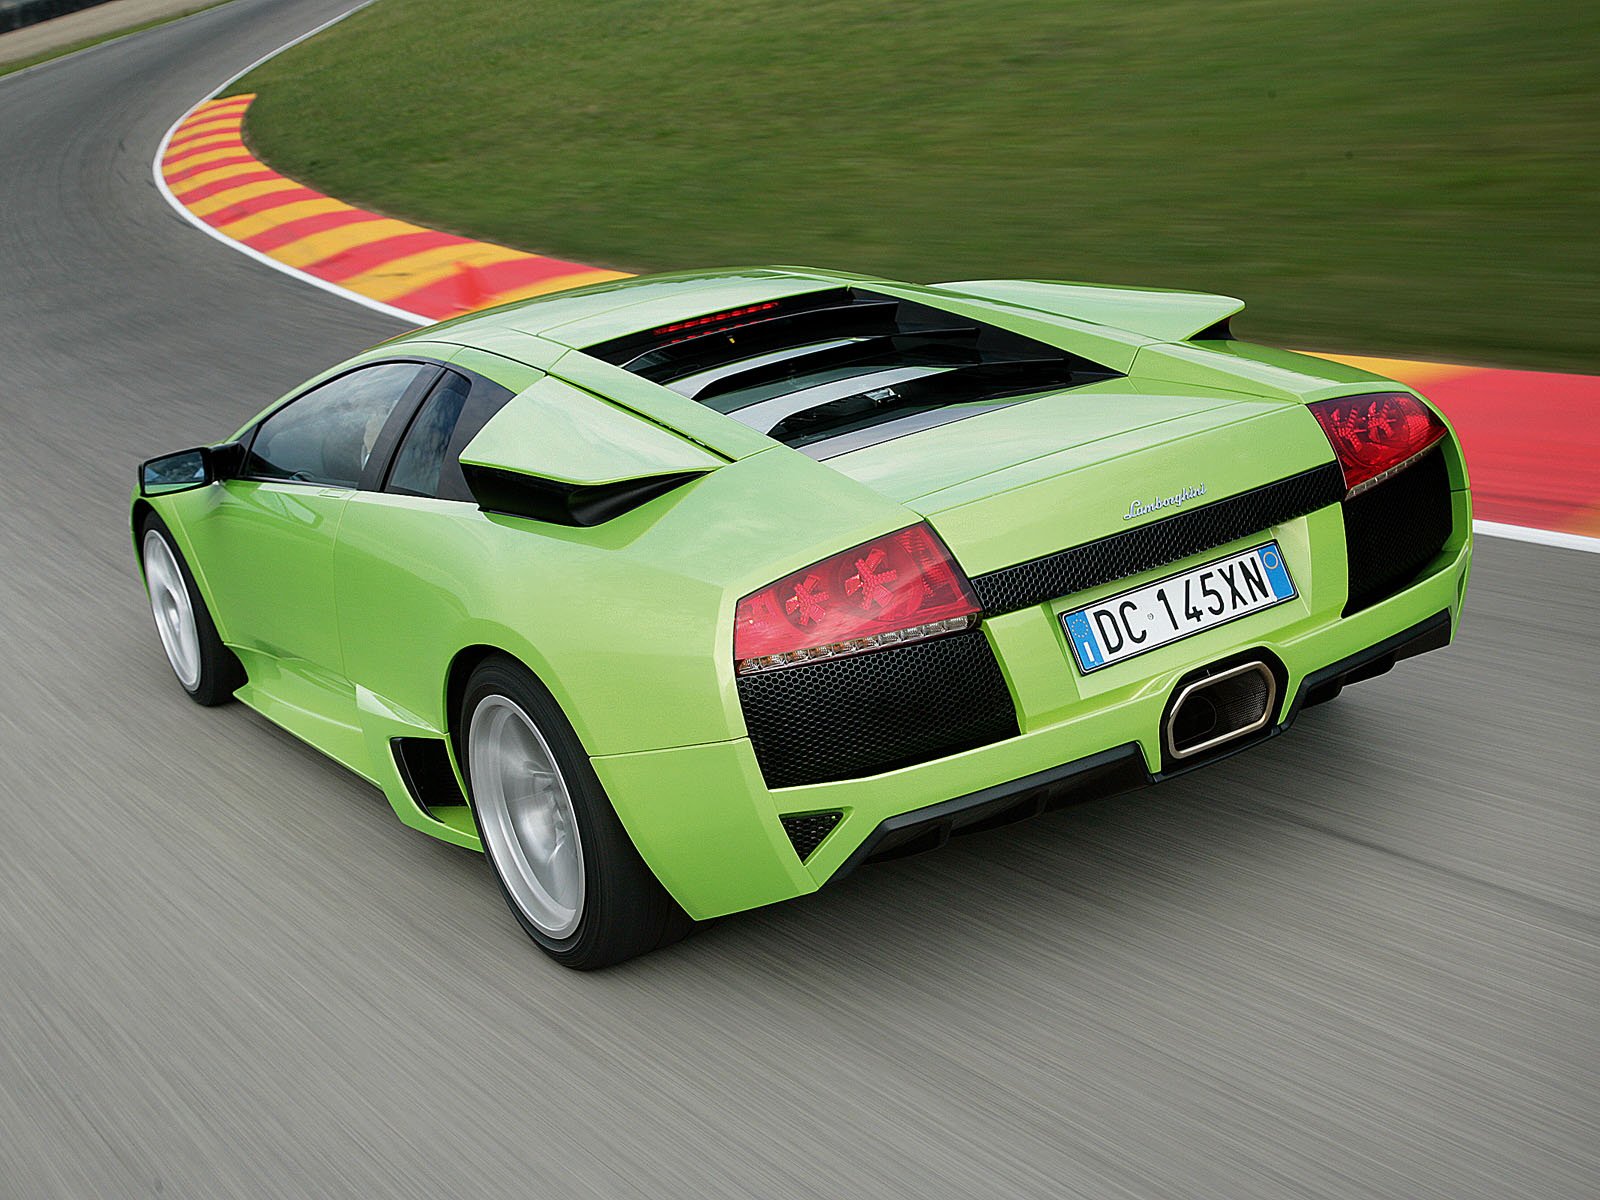 cars, Lamborghini, Green, Cars, Italian, Cars Wallpaper